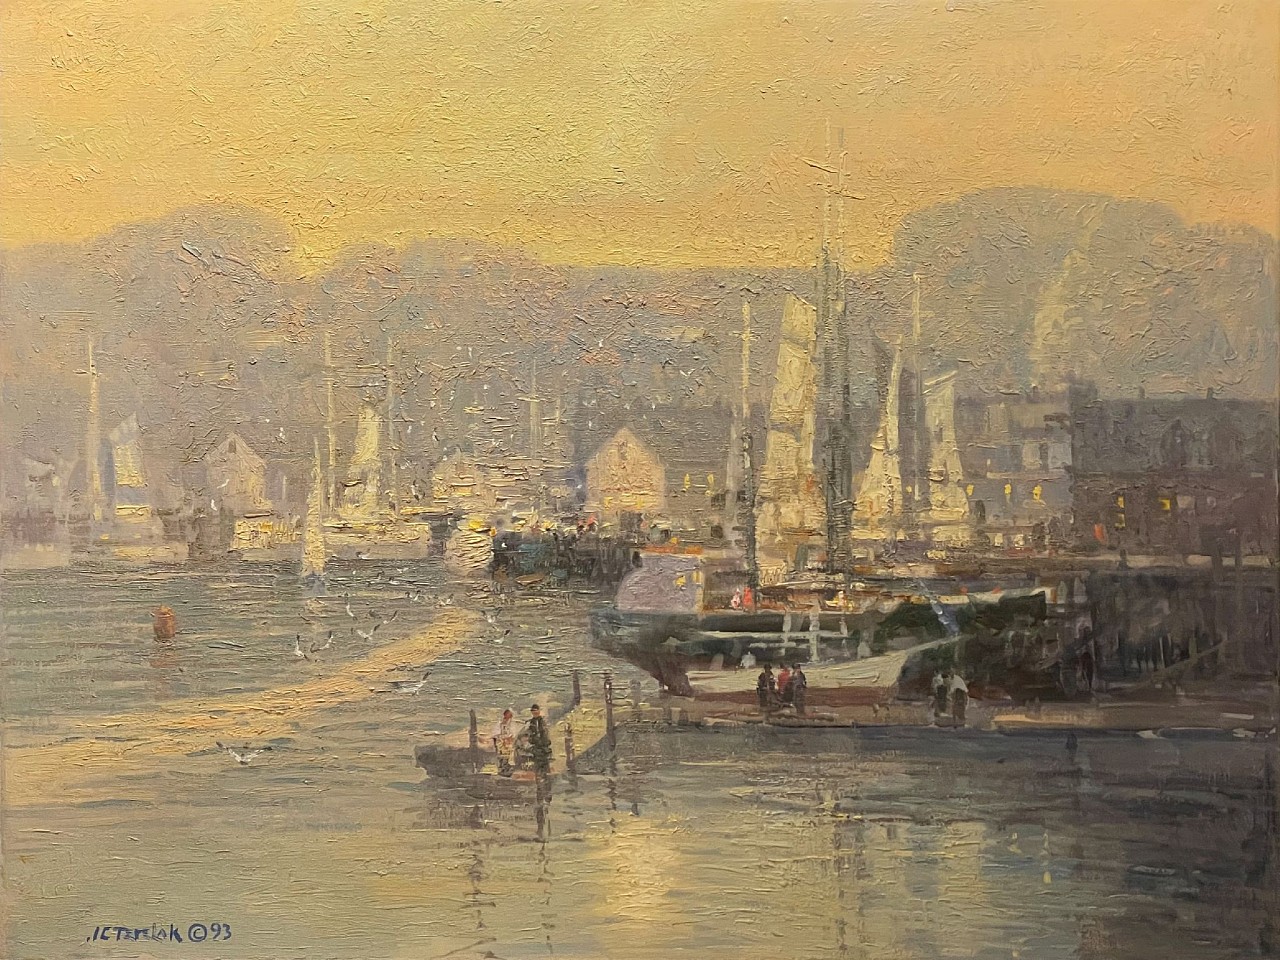 John Terelak, Sunrise, Gloucester Harbor
oil on canvas, 30 x 40 in. (76.2 x 101.6 cm)
JT240201